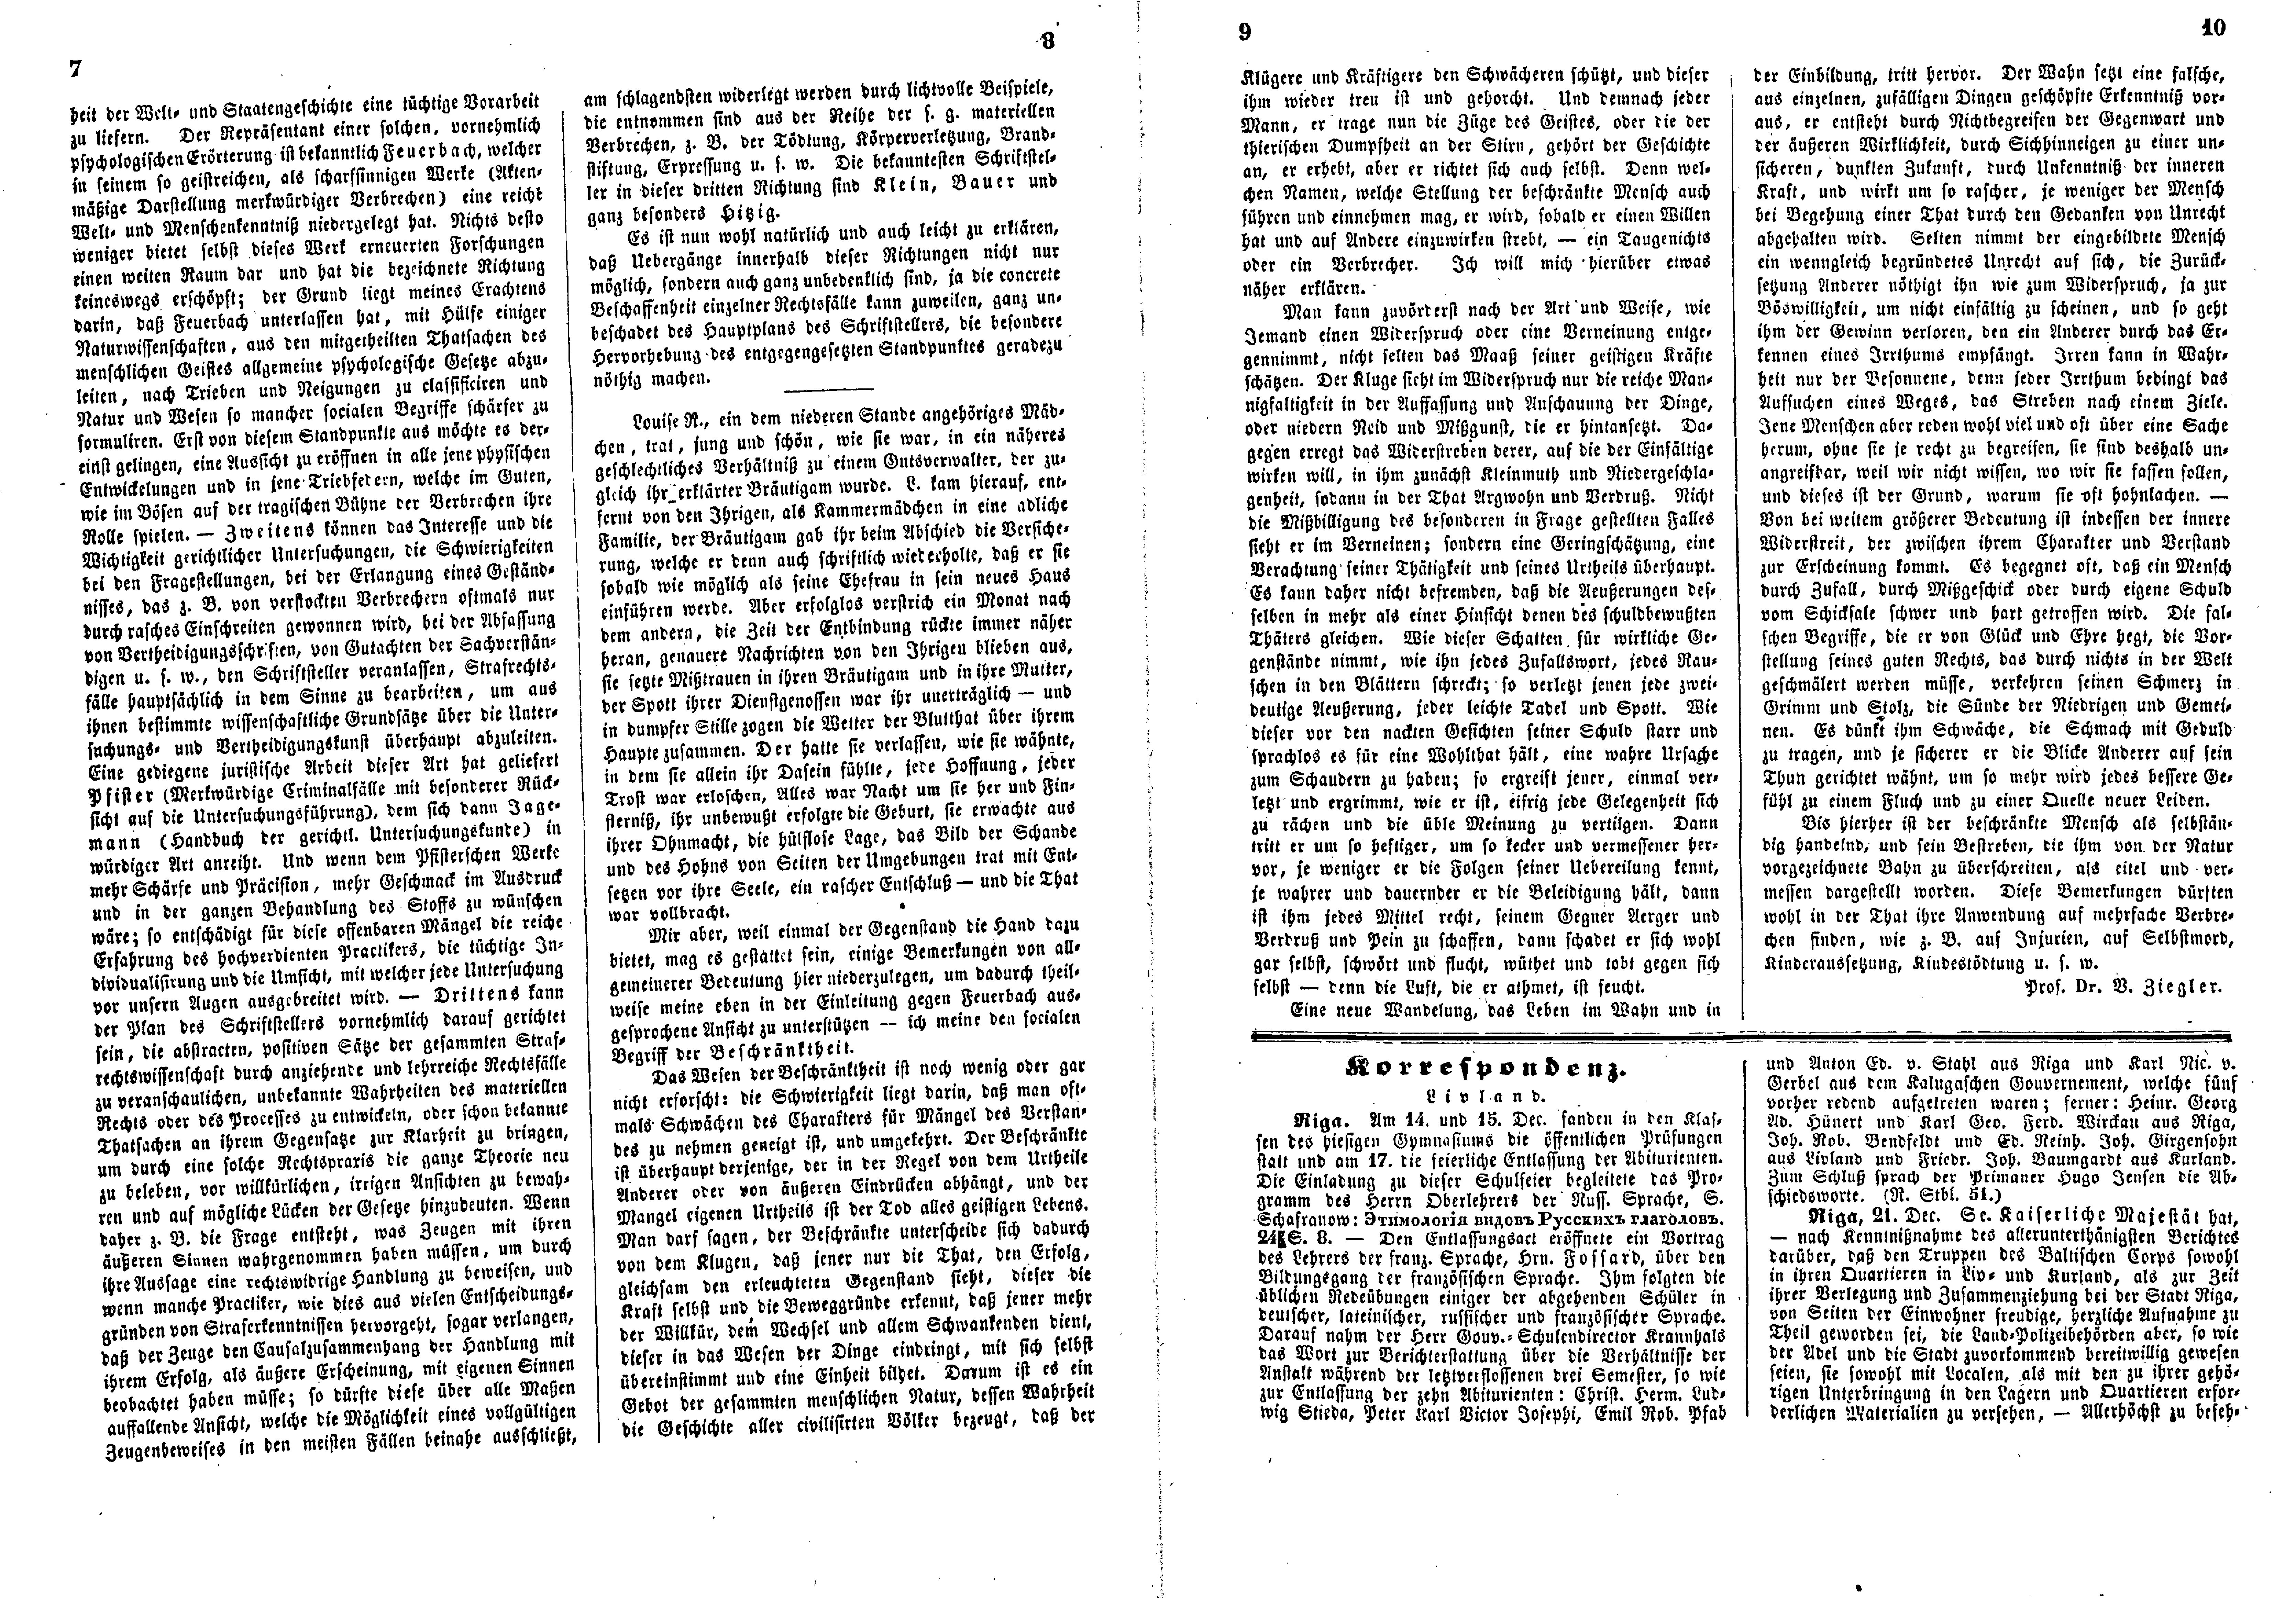 Das Inland [21] (1856) | 11. (7-10) Haupttext